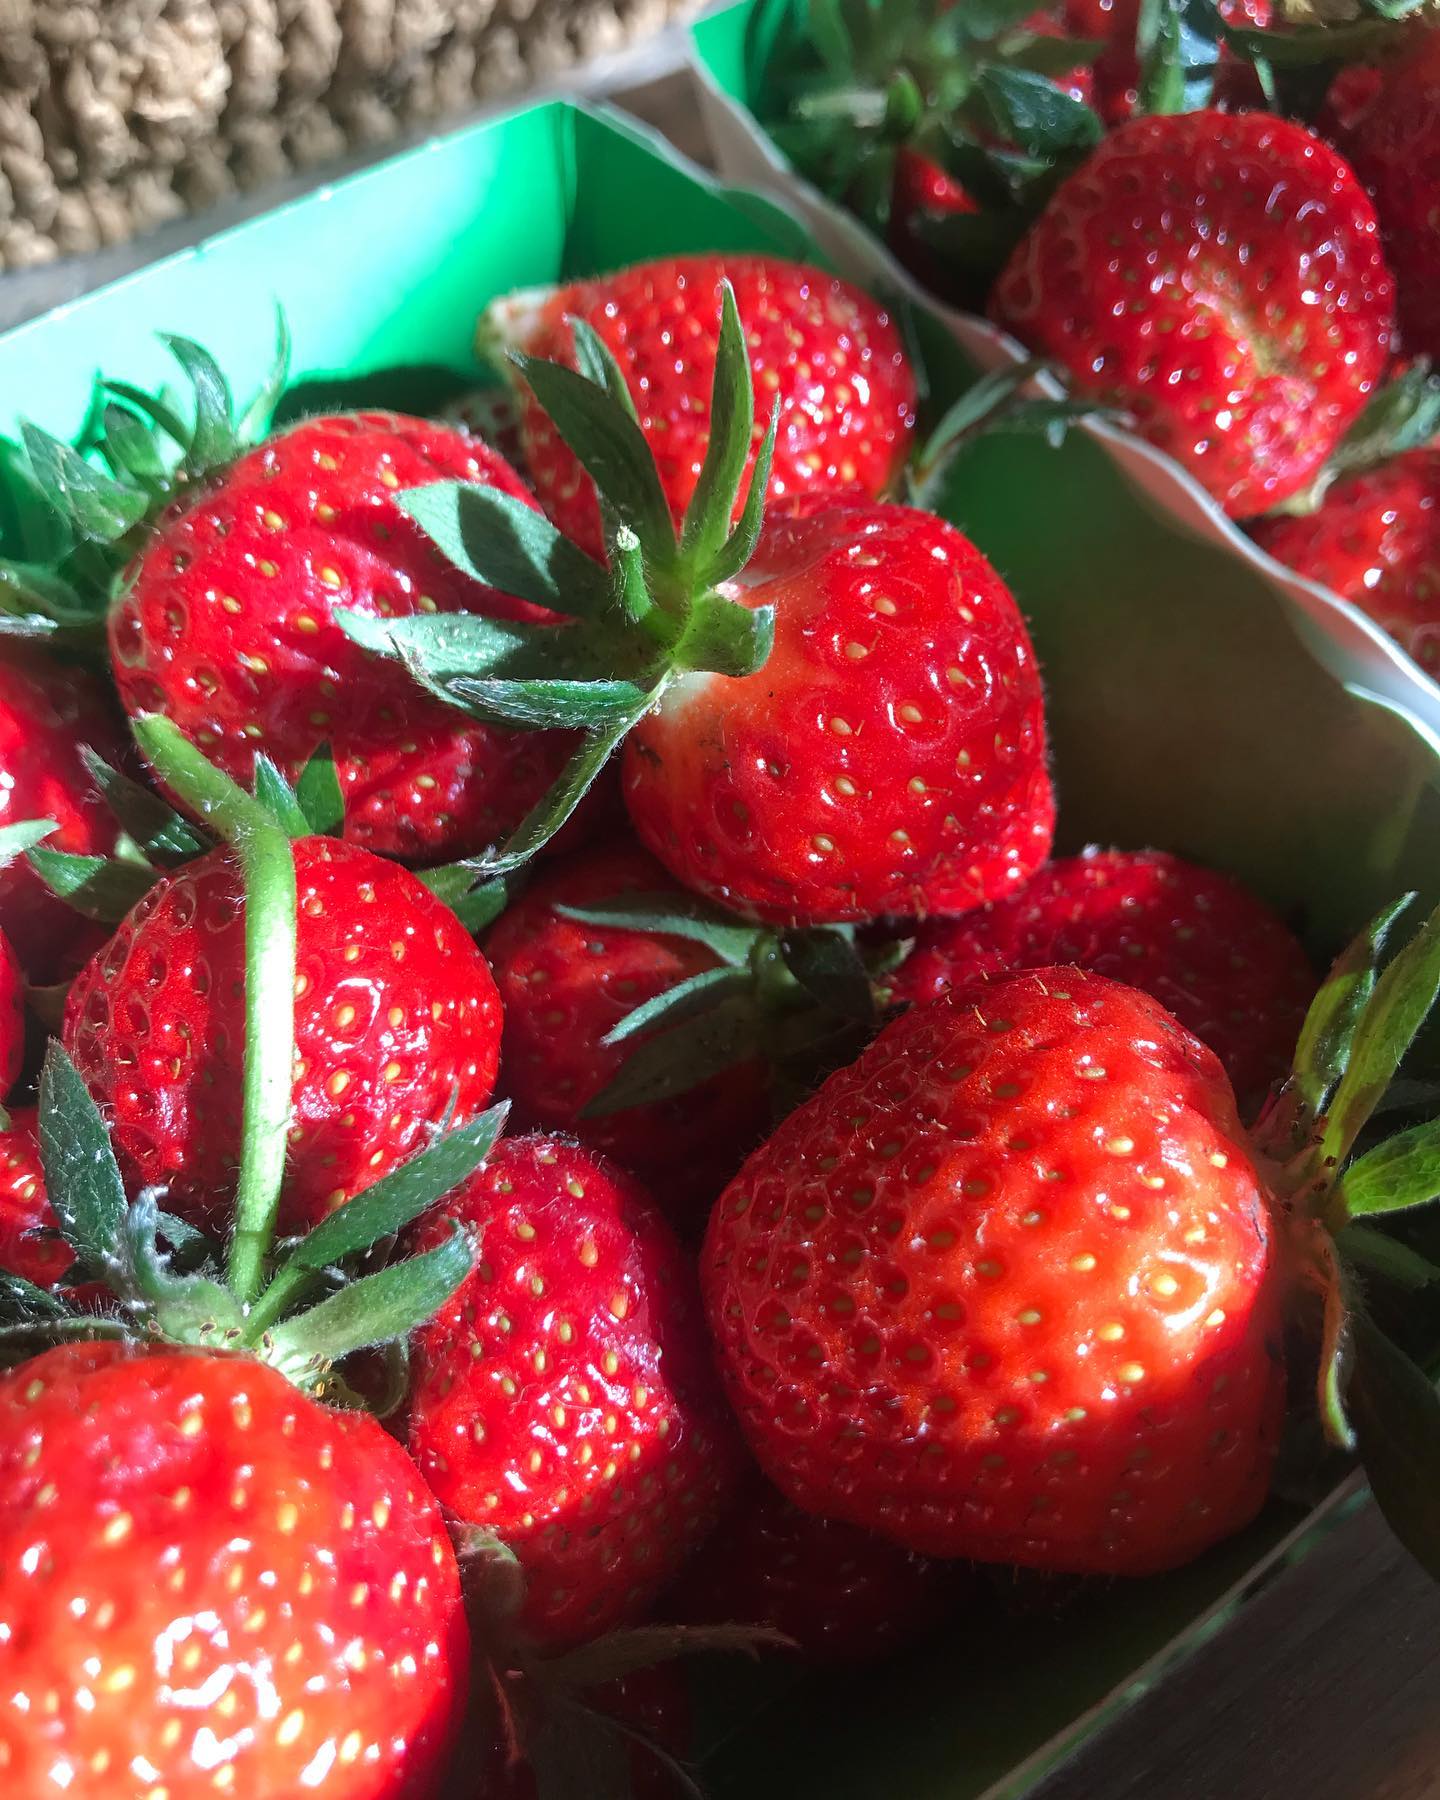 Les fraises 🍓 parfaites de La maraîchères sont arrivées !